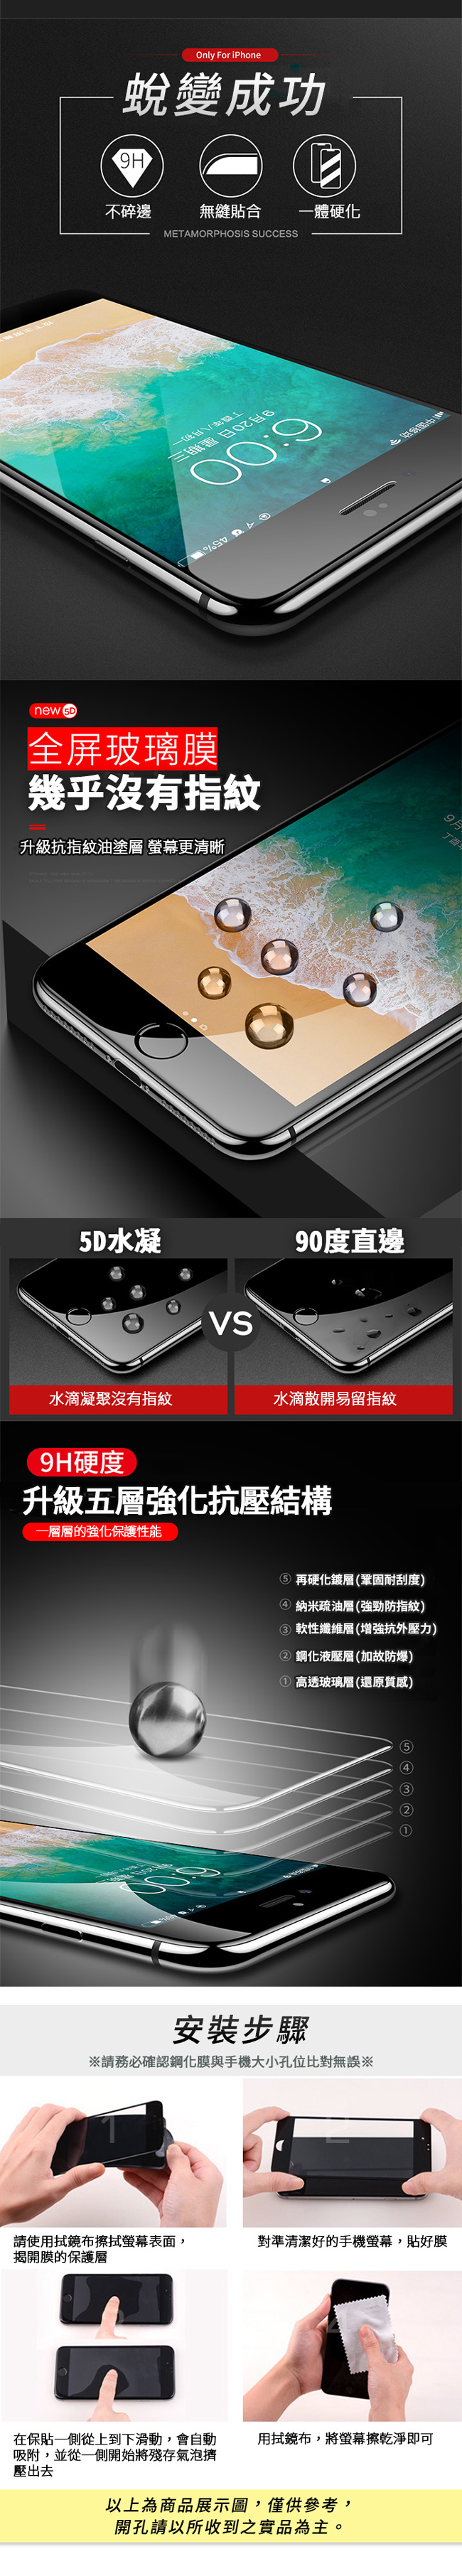 揚邑Apple iPhone XS Max全膠滿版二次強化9H鋼化玻璃膜5D防爆保護貼-黑